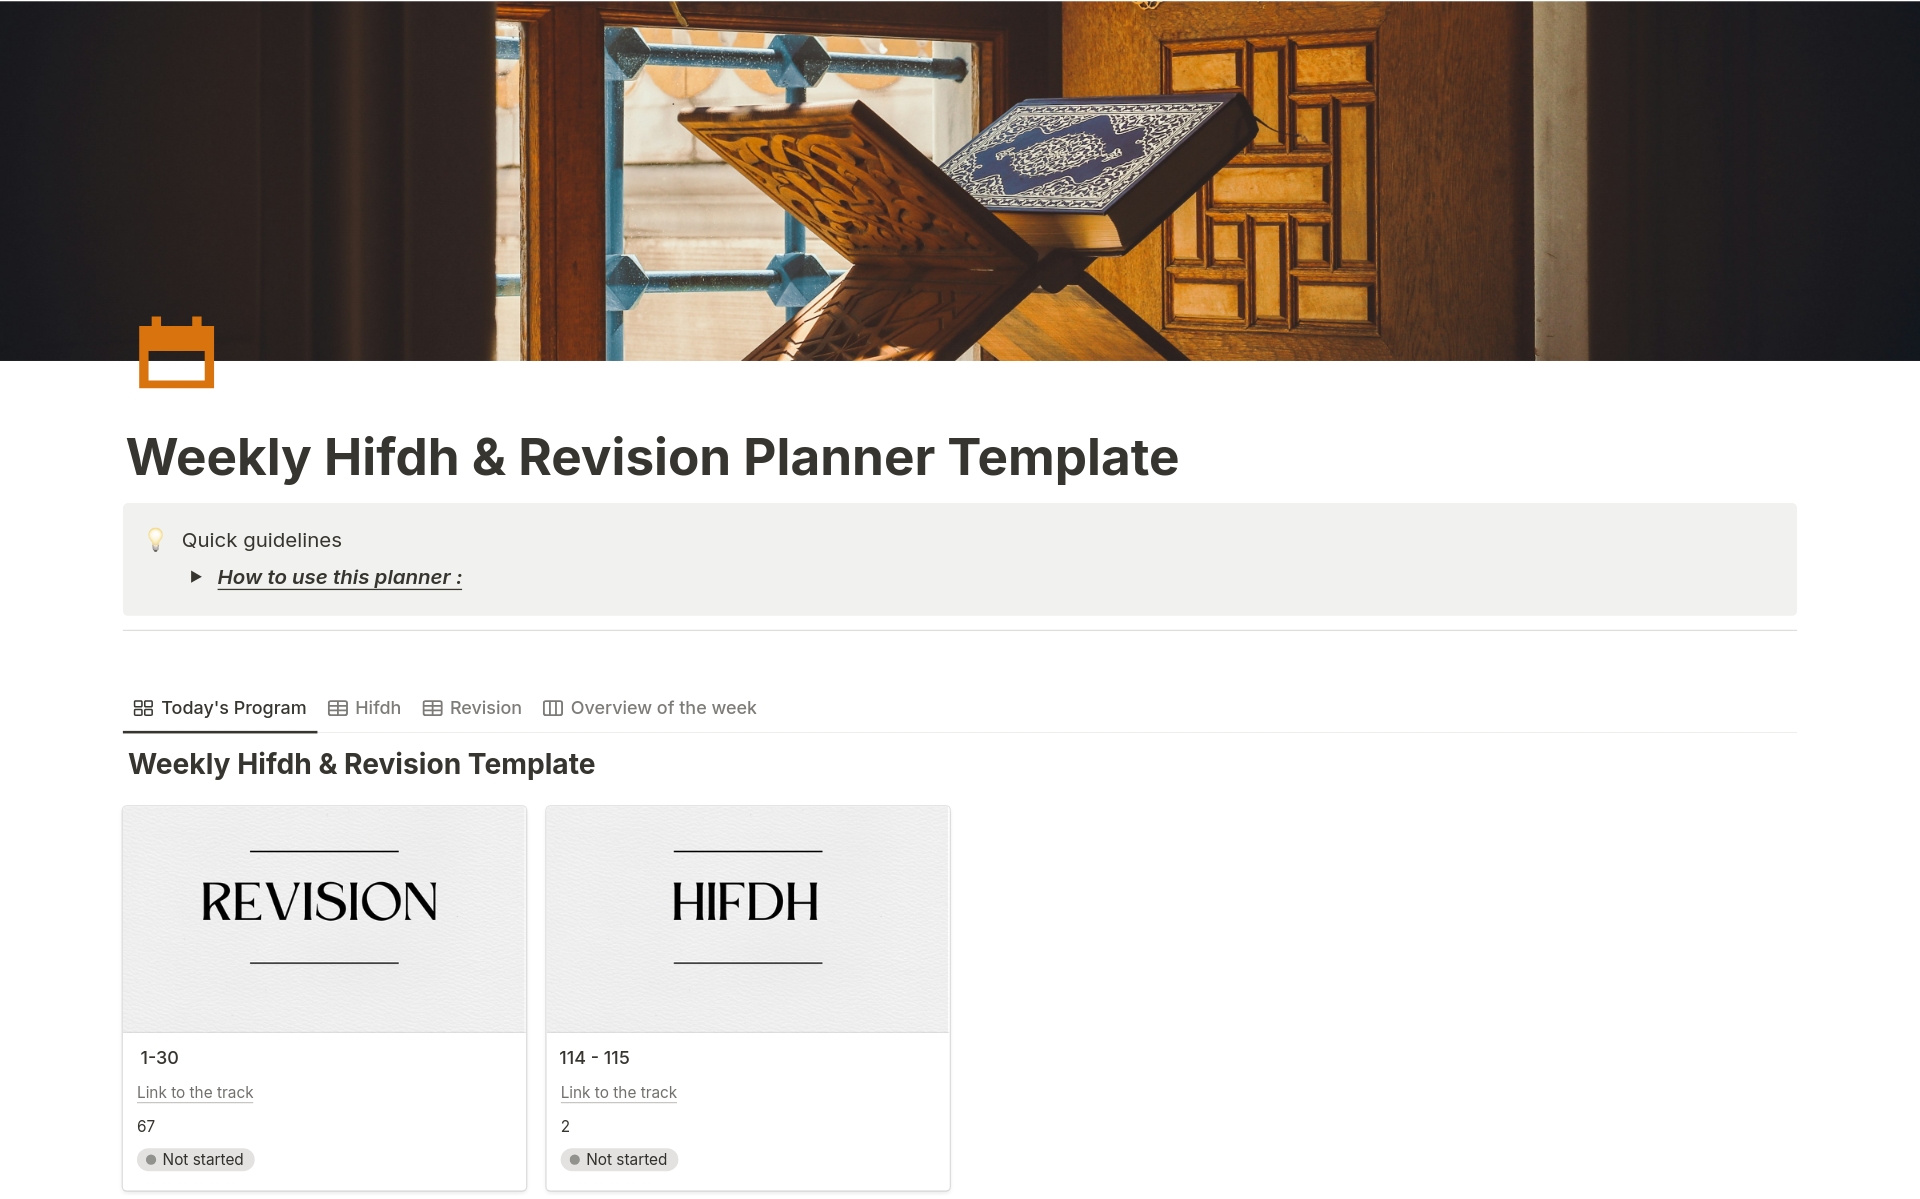 Vista previa de una plantilla para Weekly Hifdh & Revision Planner